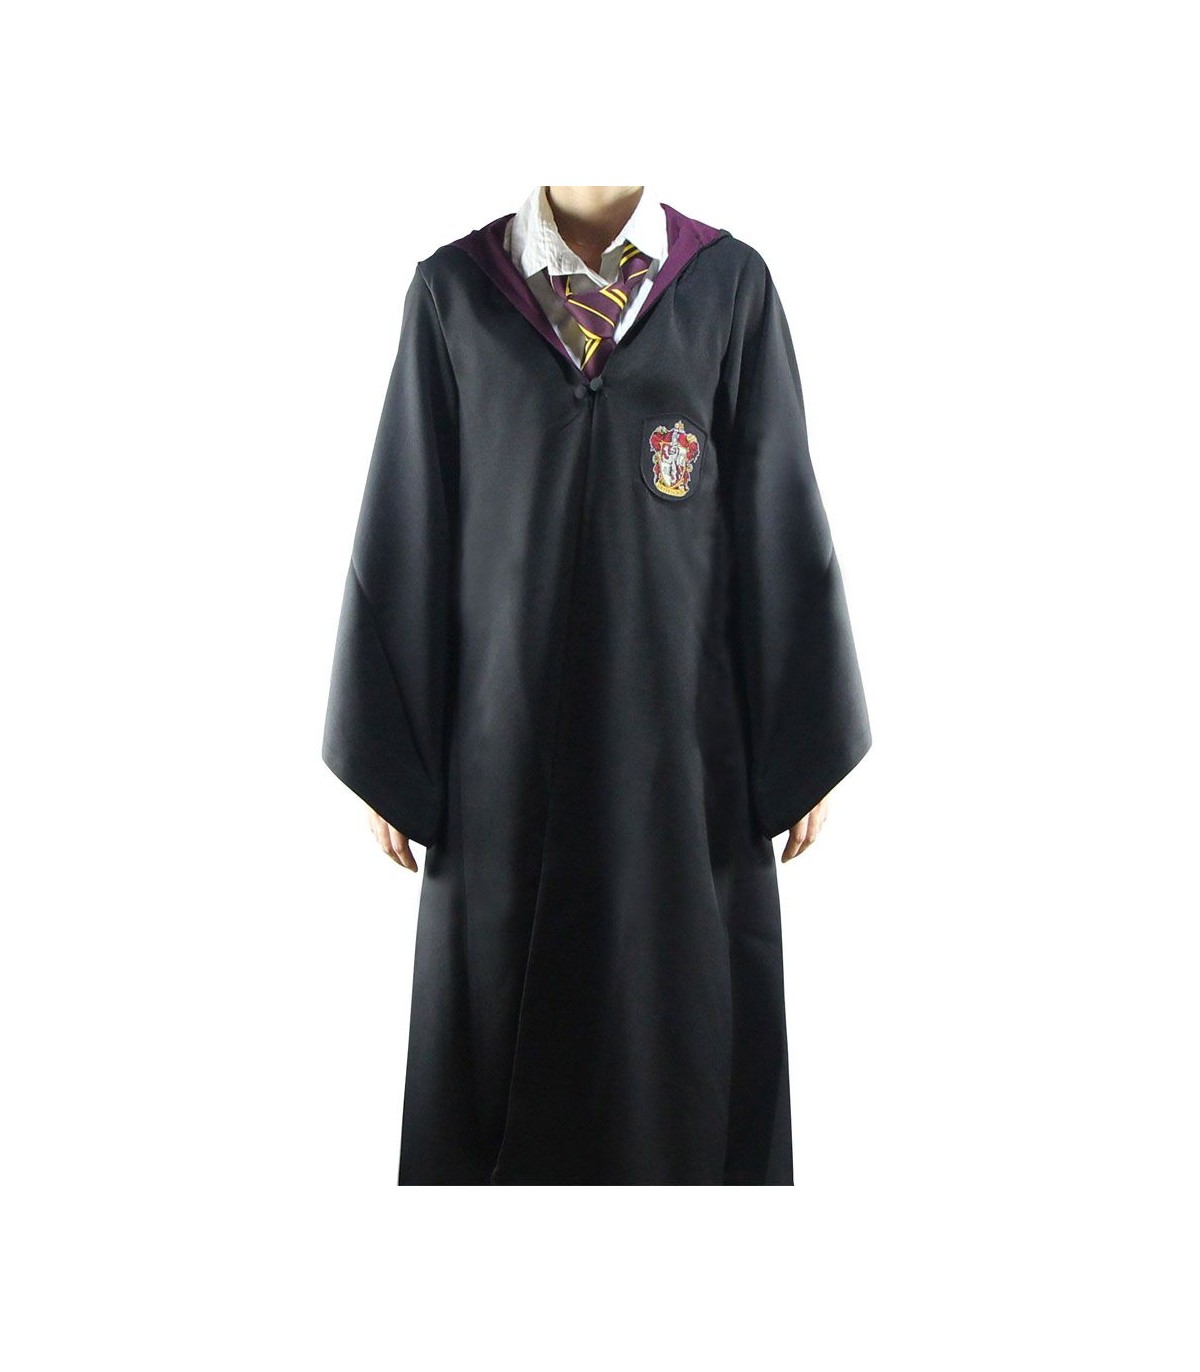 Vestuario Mago Gryffindor - Harry Potter